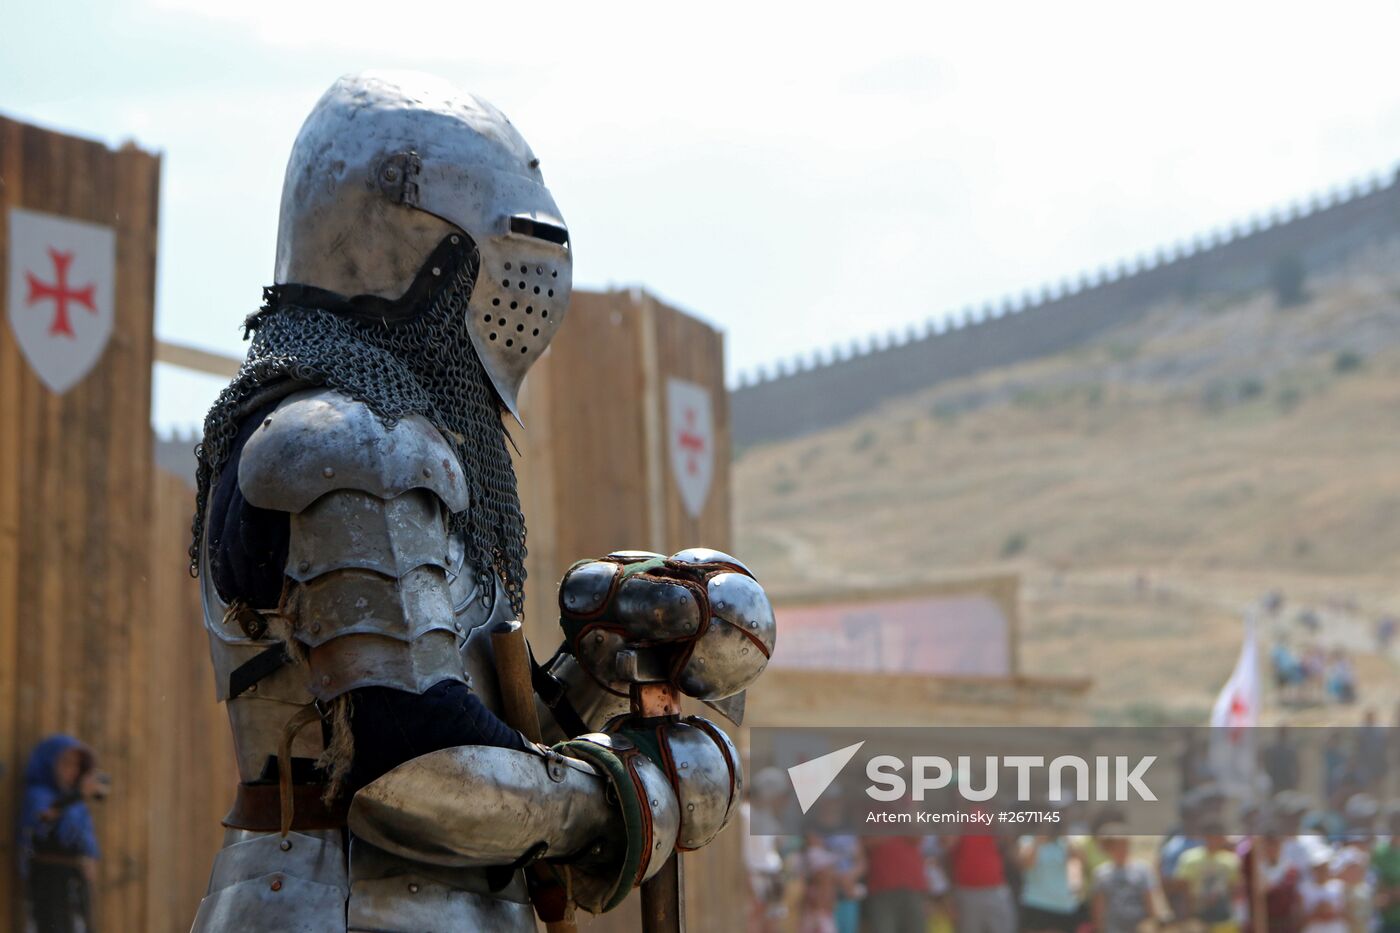 The "Genoa Helmet" 15th International Knight Festival